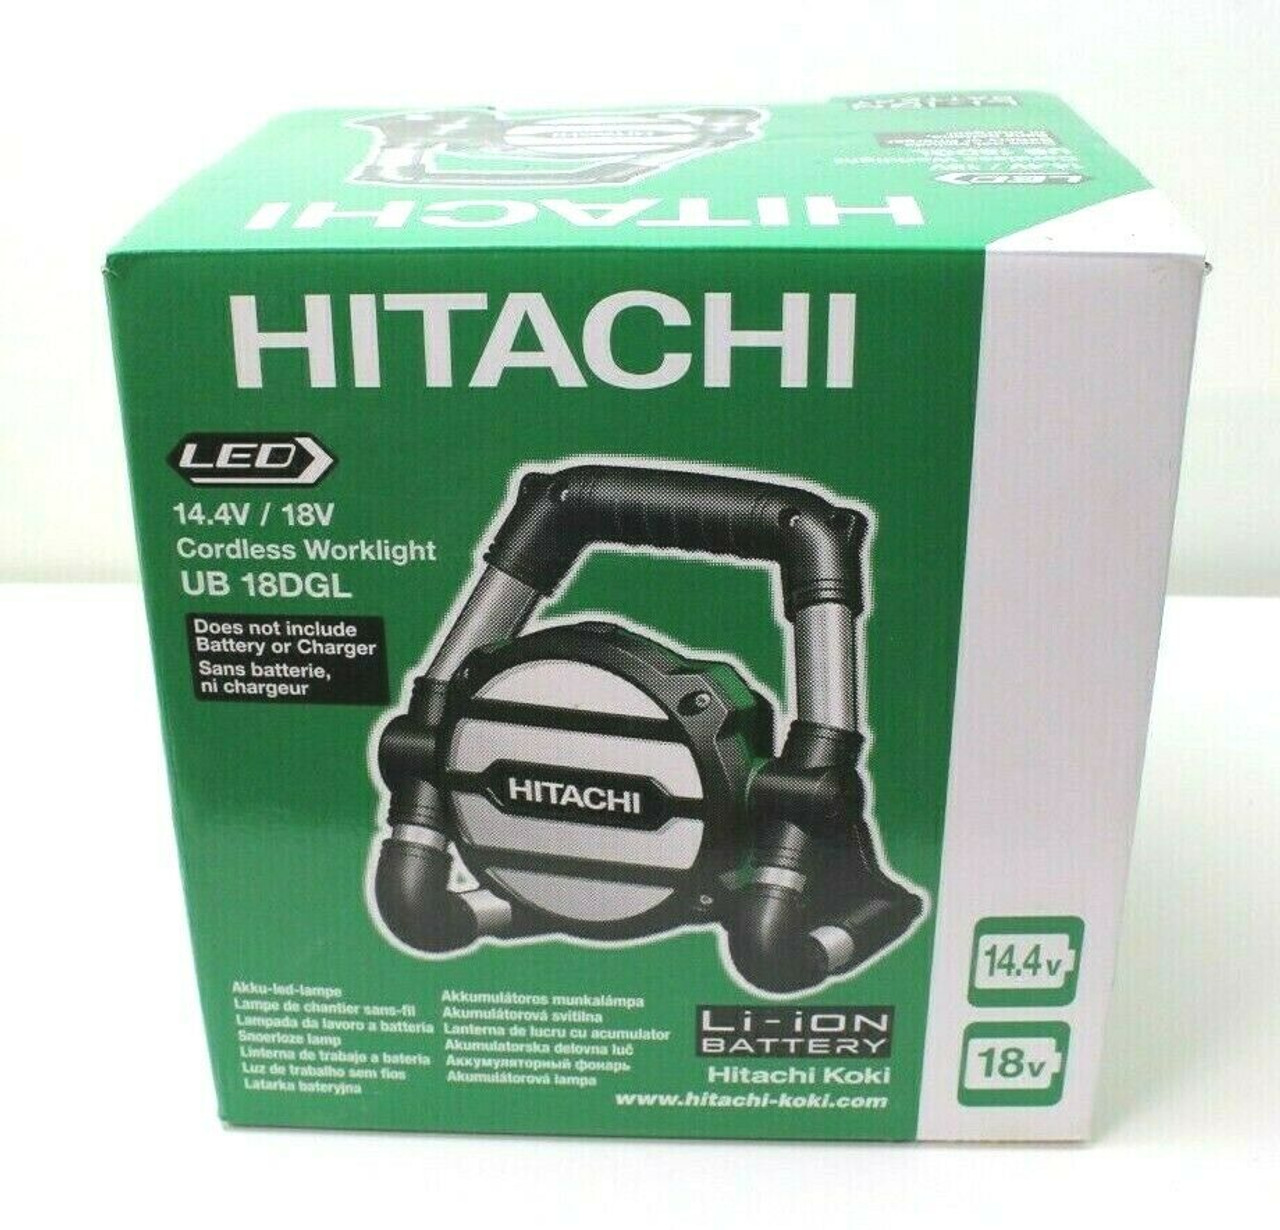 Hitachi 14/4V/18V Cordless Work Light (UB18DGL) - TOOL ONLY